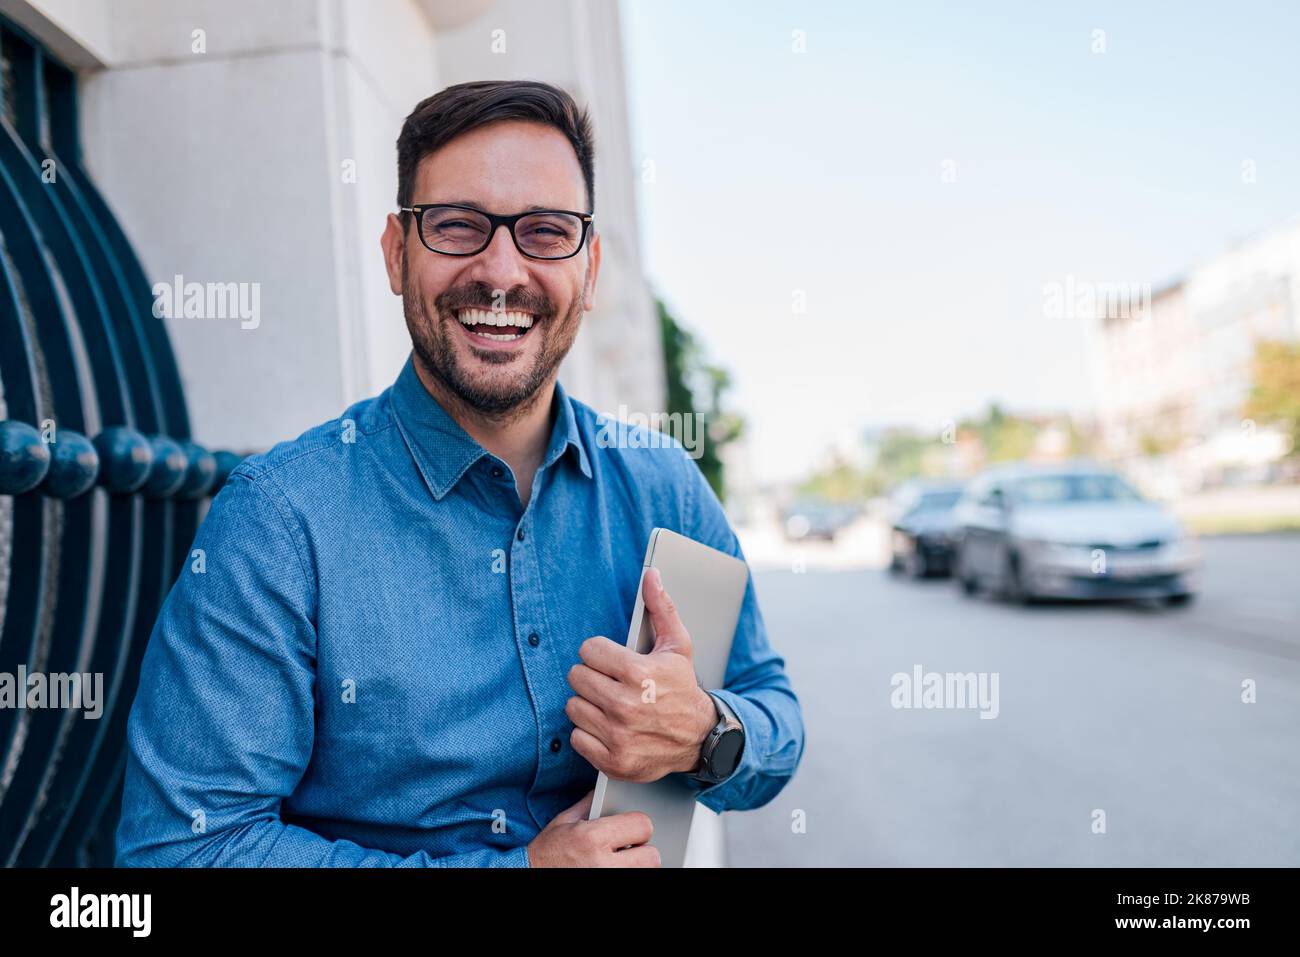 Photo ou bel homme adulte avec des lunettes, tenant fermement son ordinateur dans ses mains, souriant pour la photo. Banque D'Images